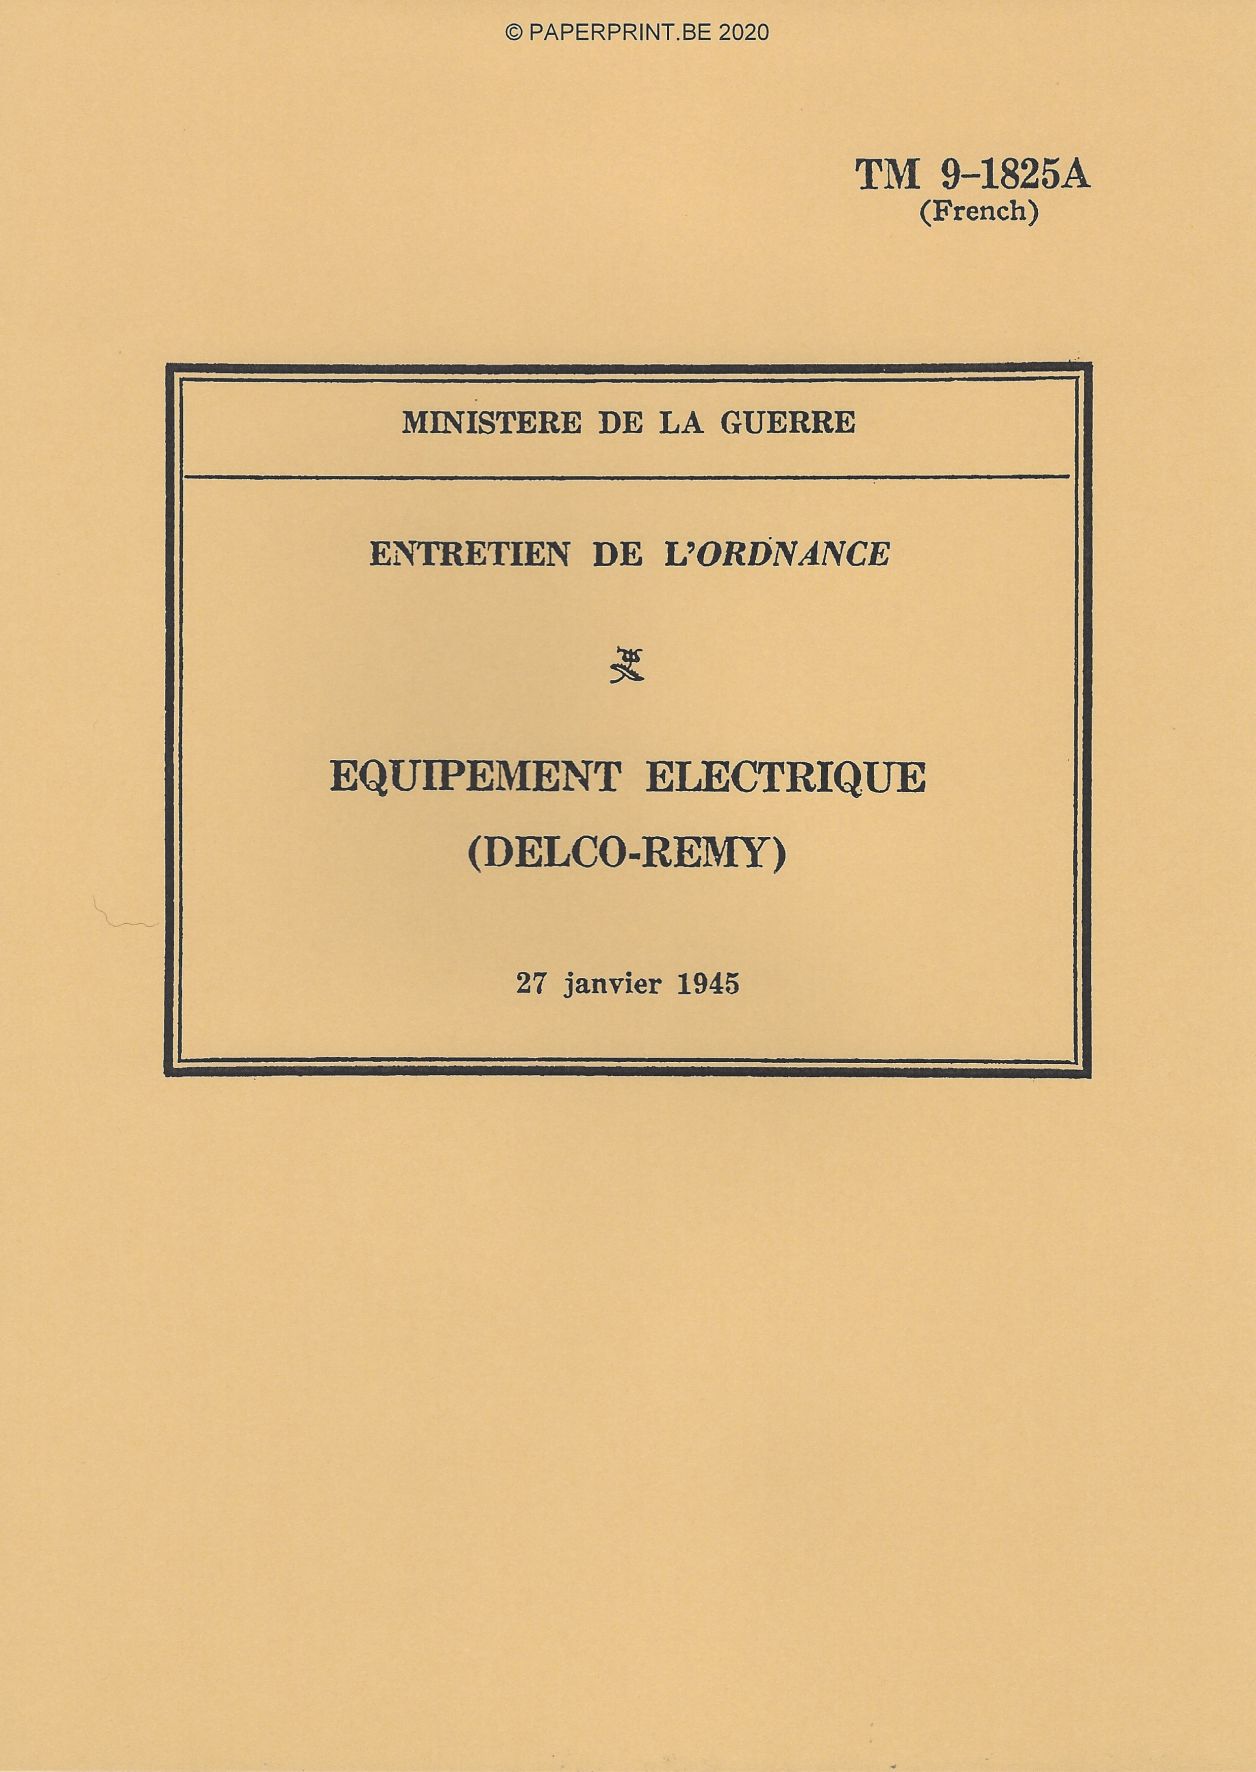 TM 9-1825A FR EQUIPEMENT ELECTRIQUE (DELCO-REMY)